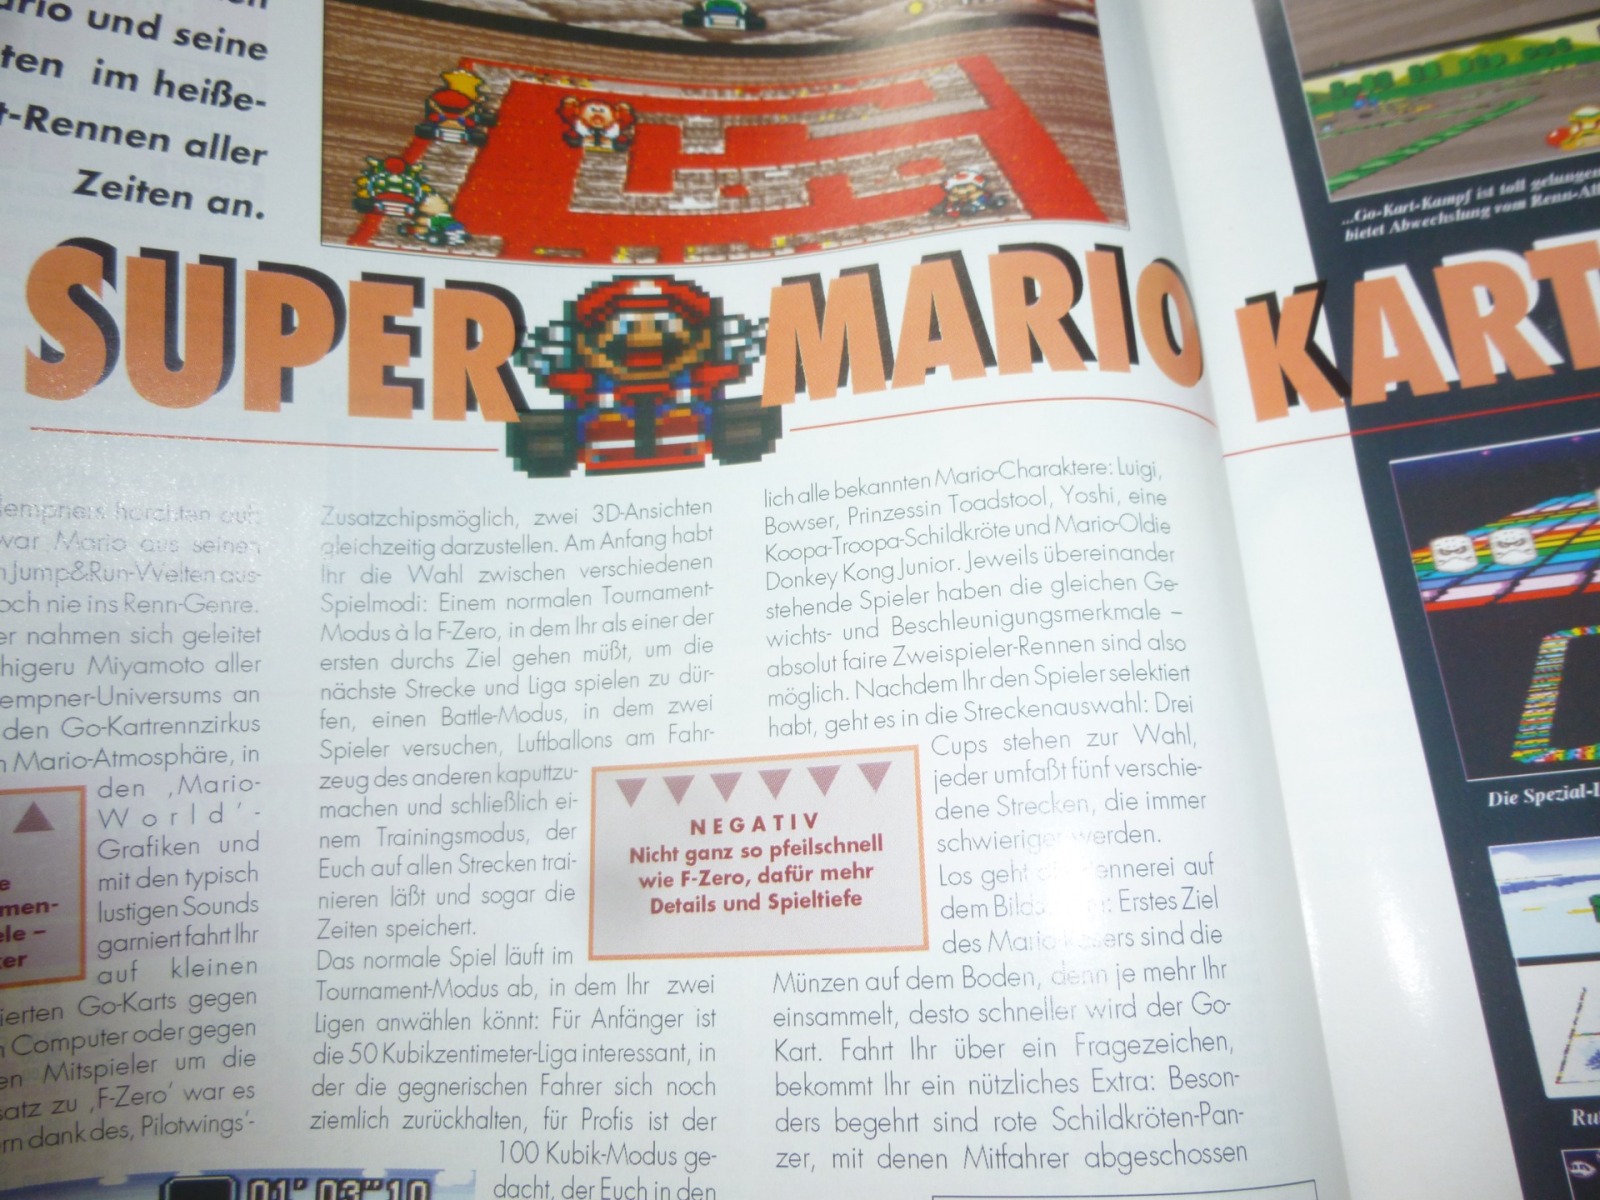 TOTAL Das unabhängige Magazin - 100% Nintendo - Ausgabe 10/93 1993 29